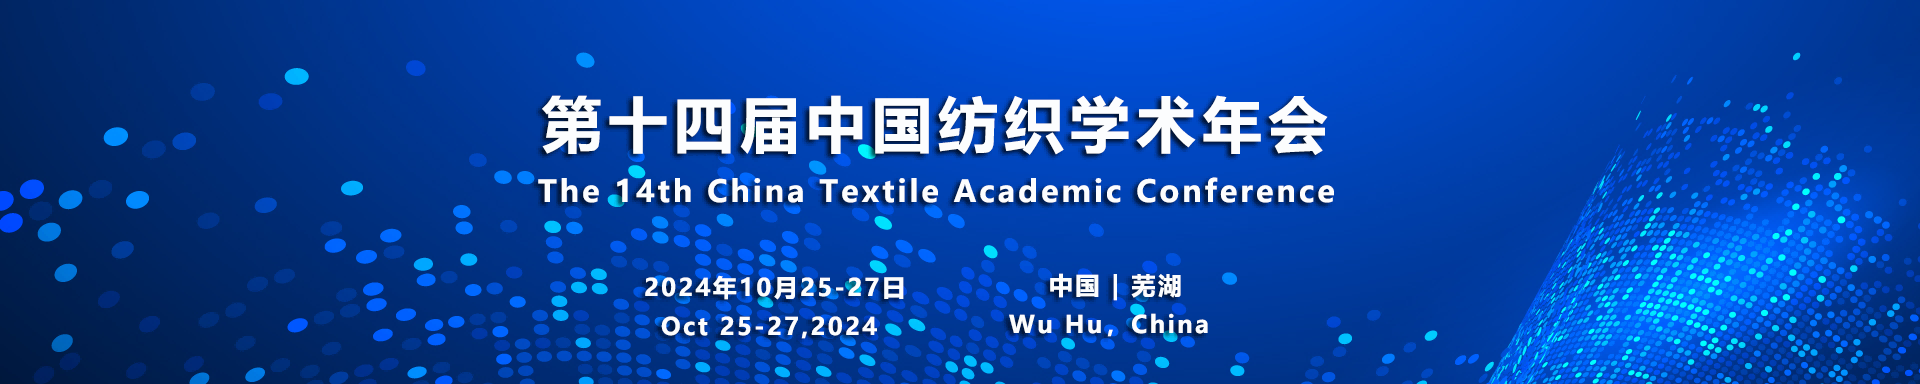 参会注册 - 第十四届中国纺织学术年会